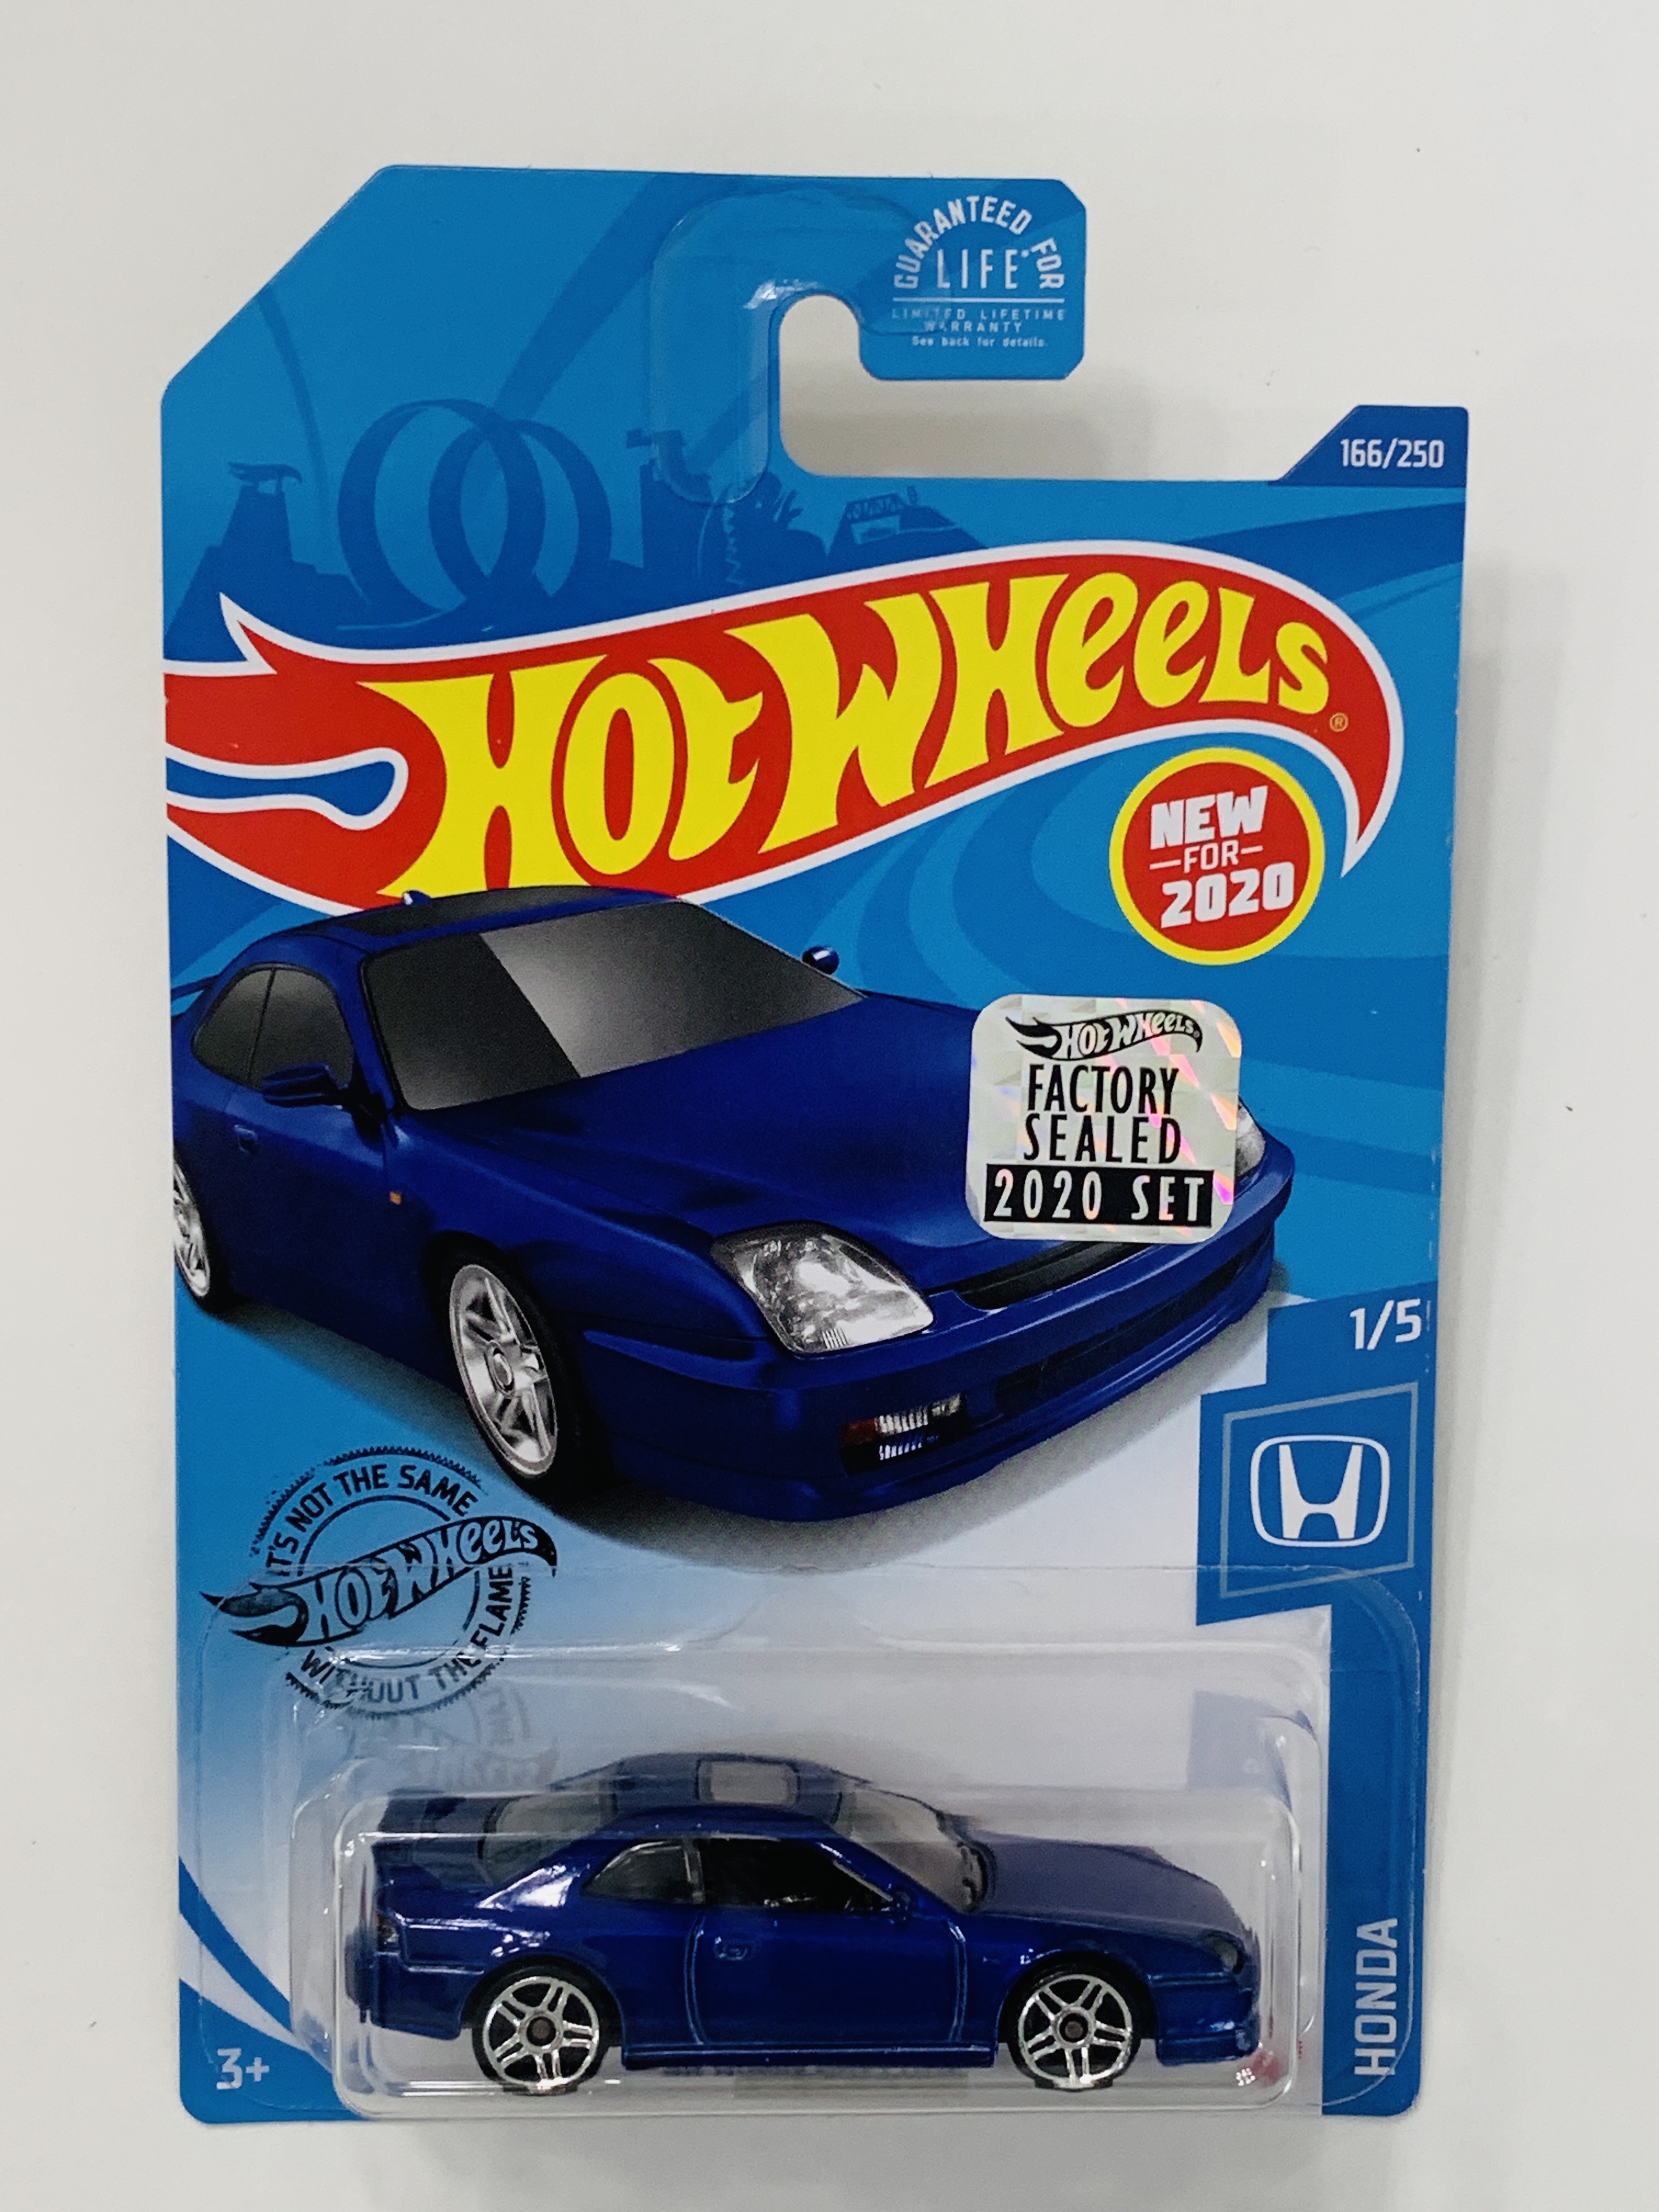 Hot Wheels 2020 Factory Set #166 '98 Honda Prelude - Blue